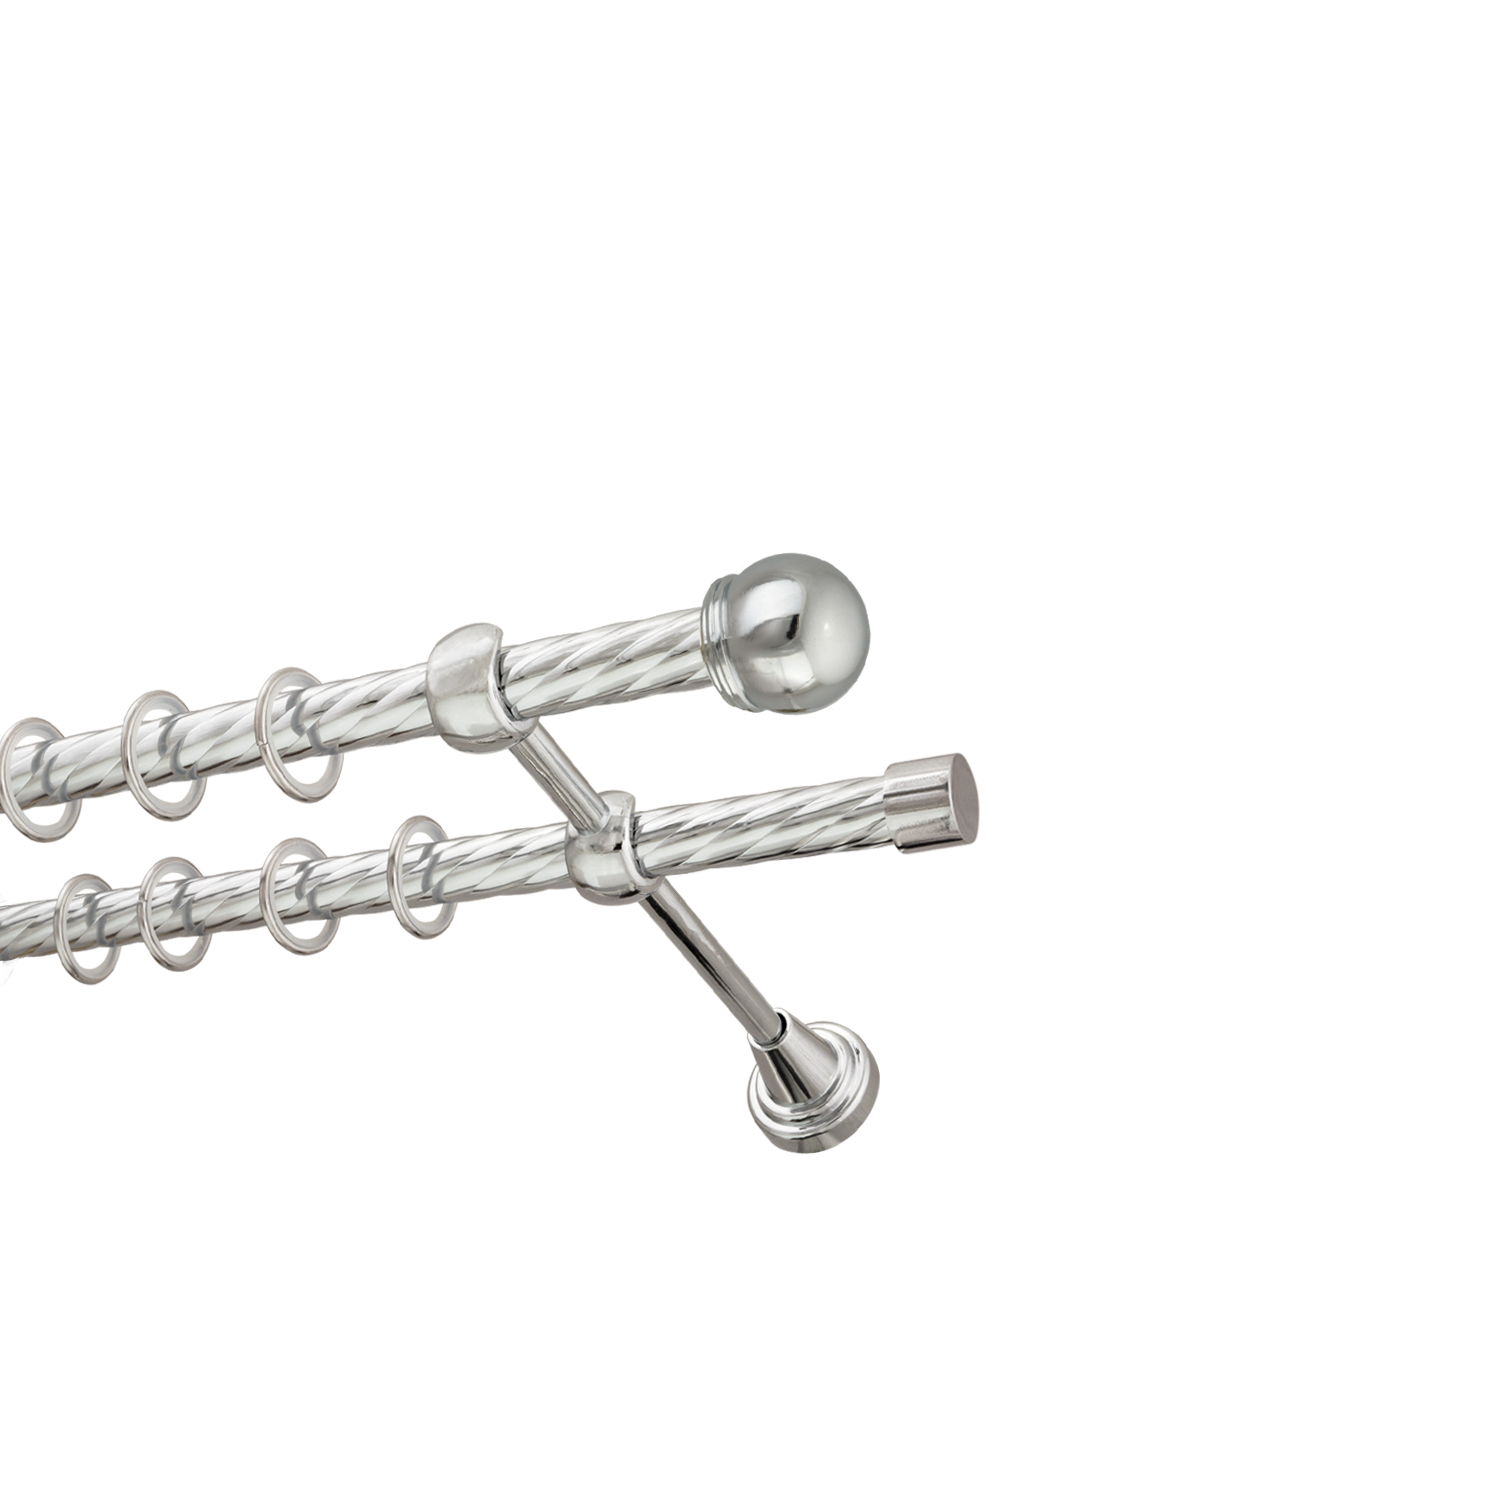 Металлический карниз для штор Вива, двухрядный 16/16 мм, серебро, витая штанга, длина 300 см